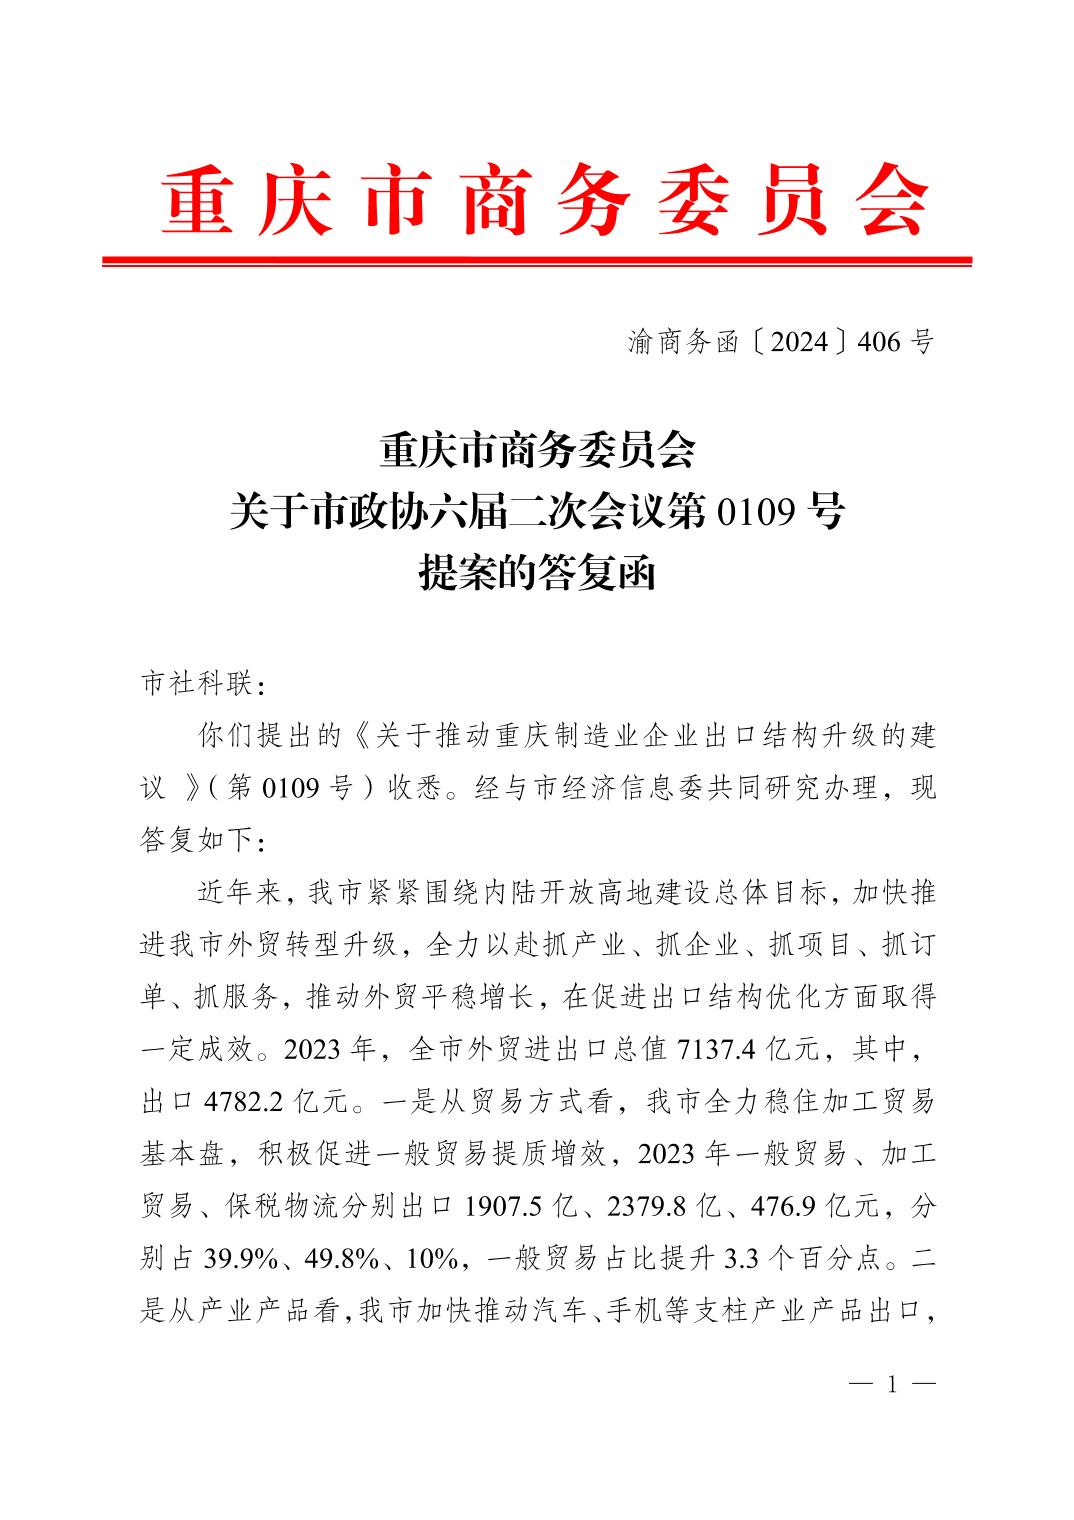 重庆市商务委员会关于市政协六届二次会议第 0109号提案的答复函